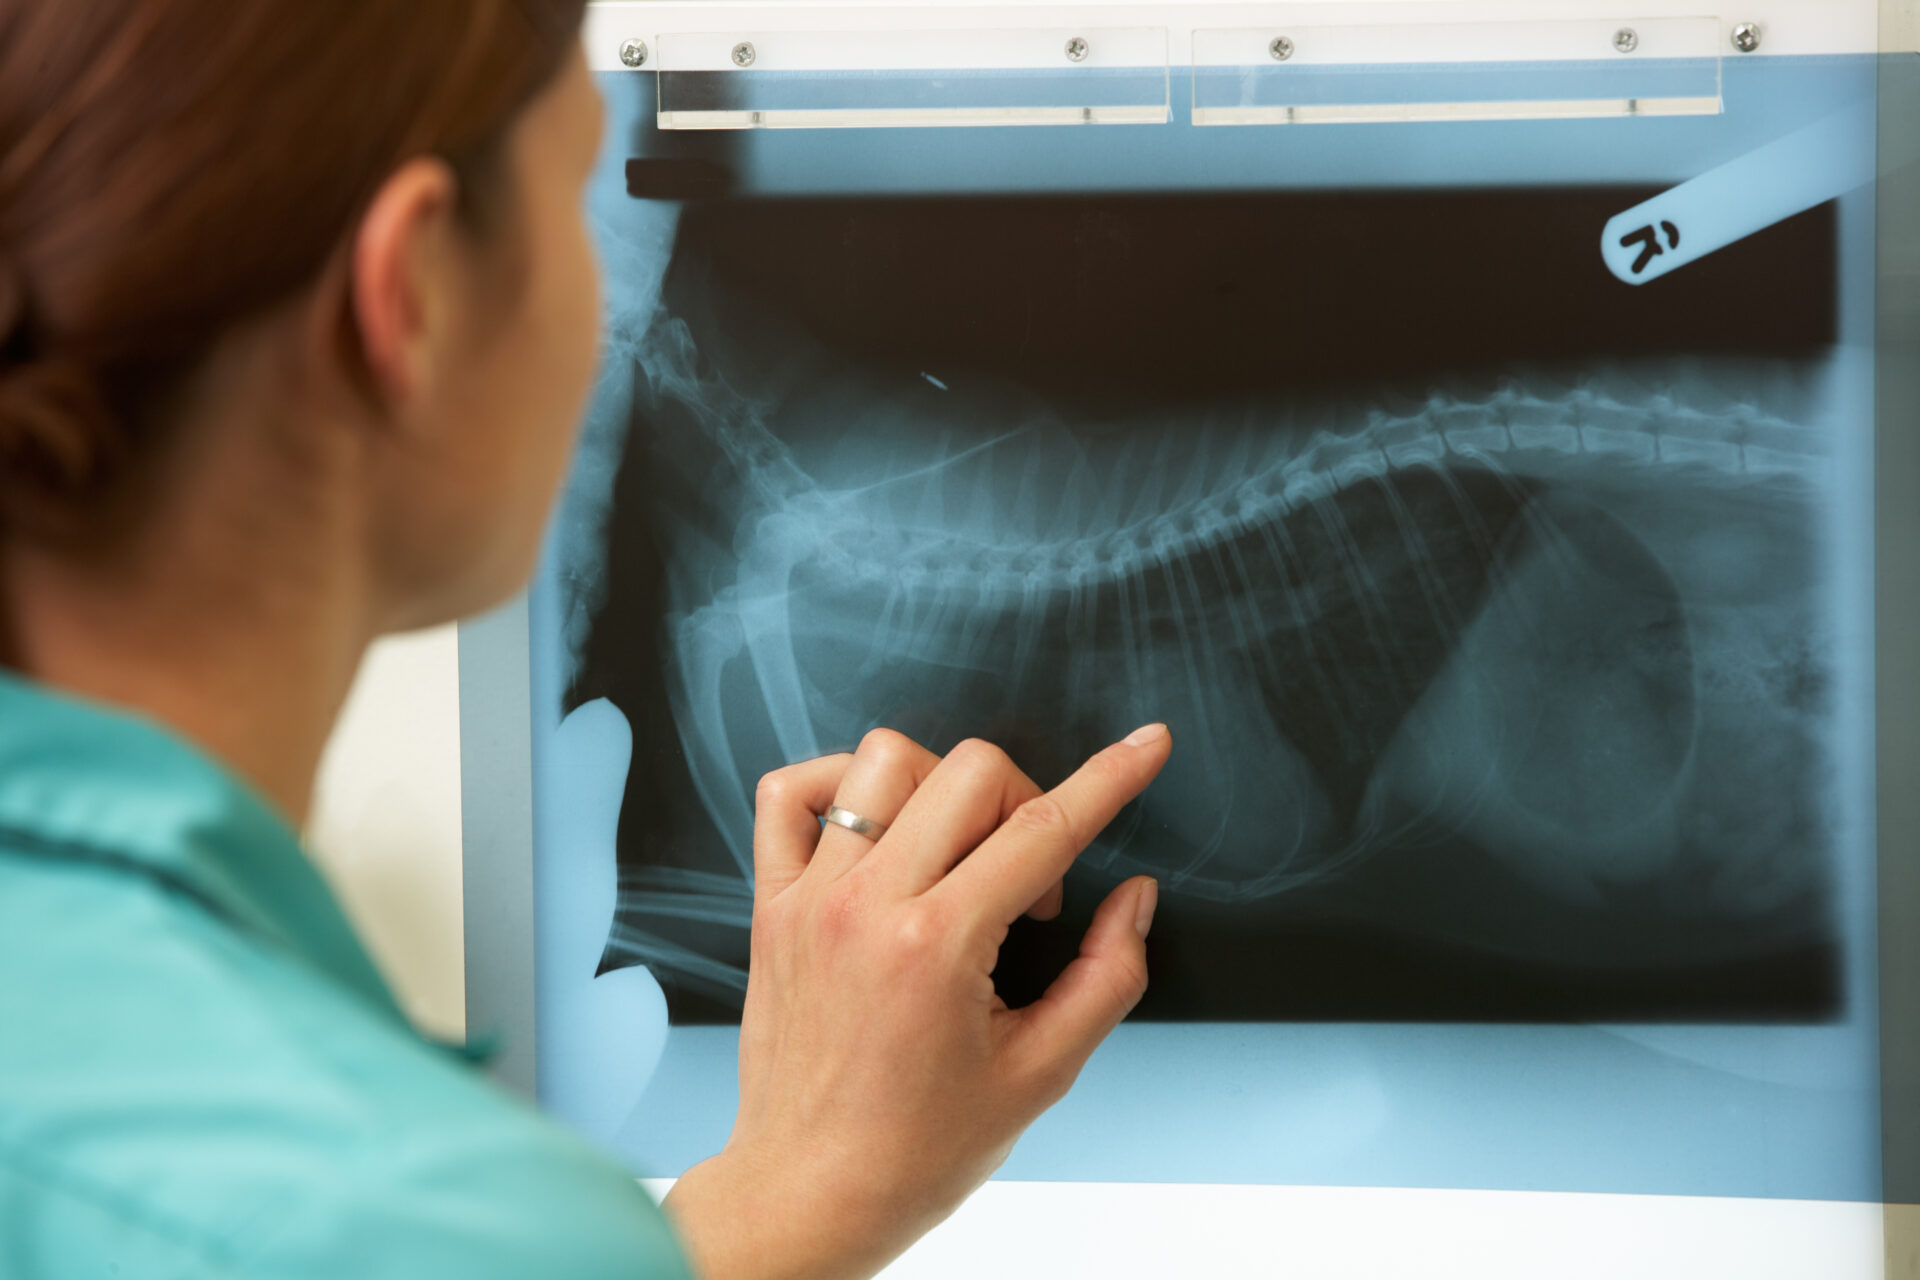 Veterinary Radiological System Market